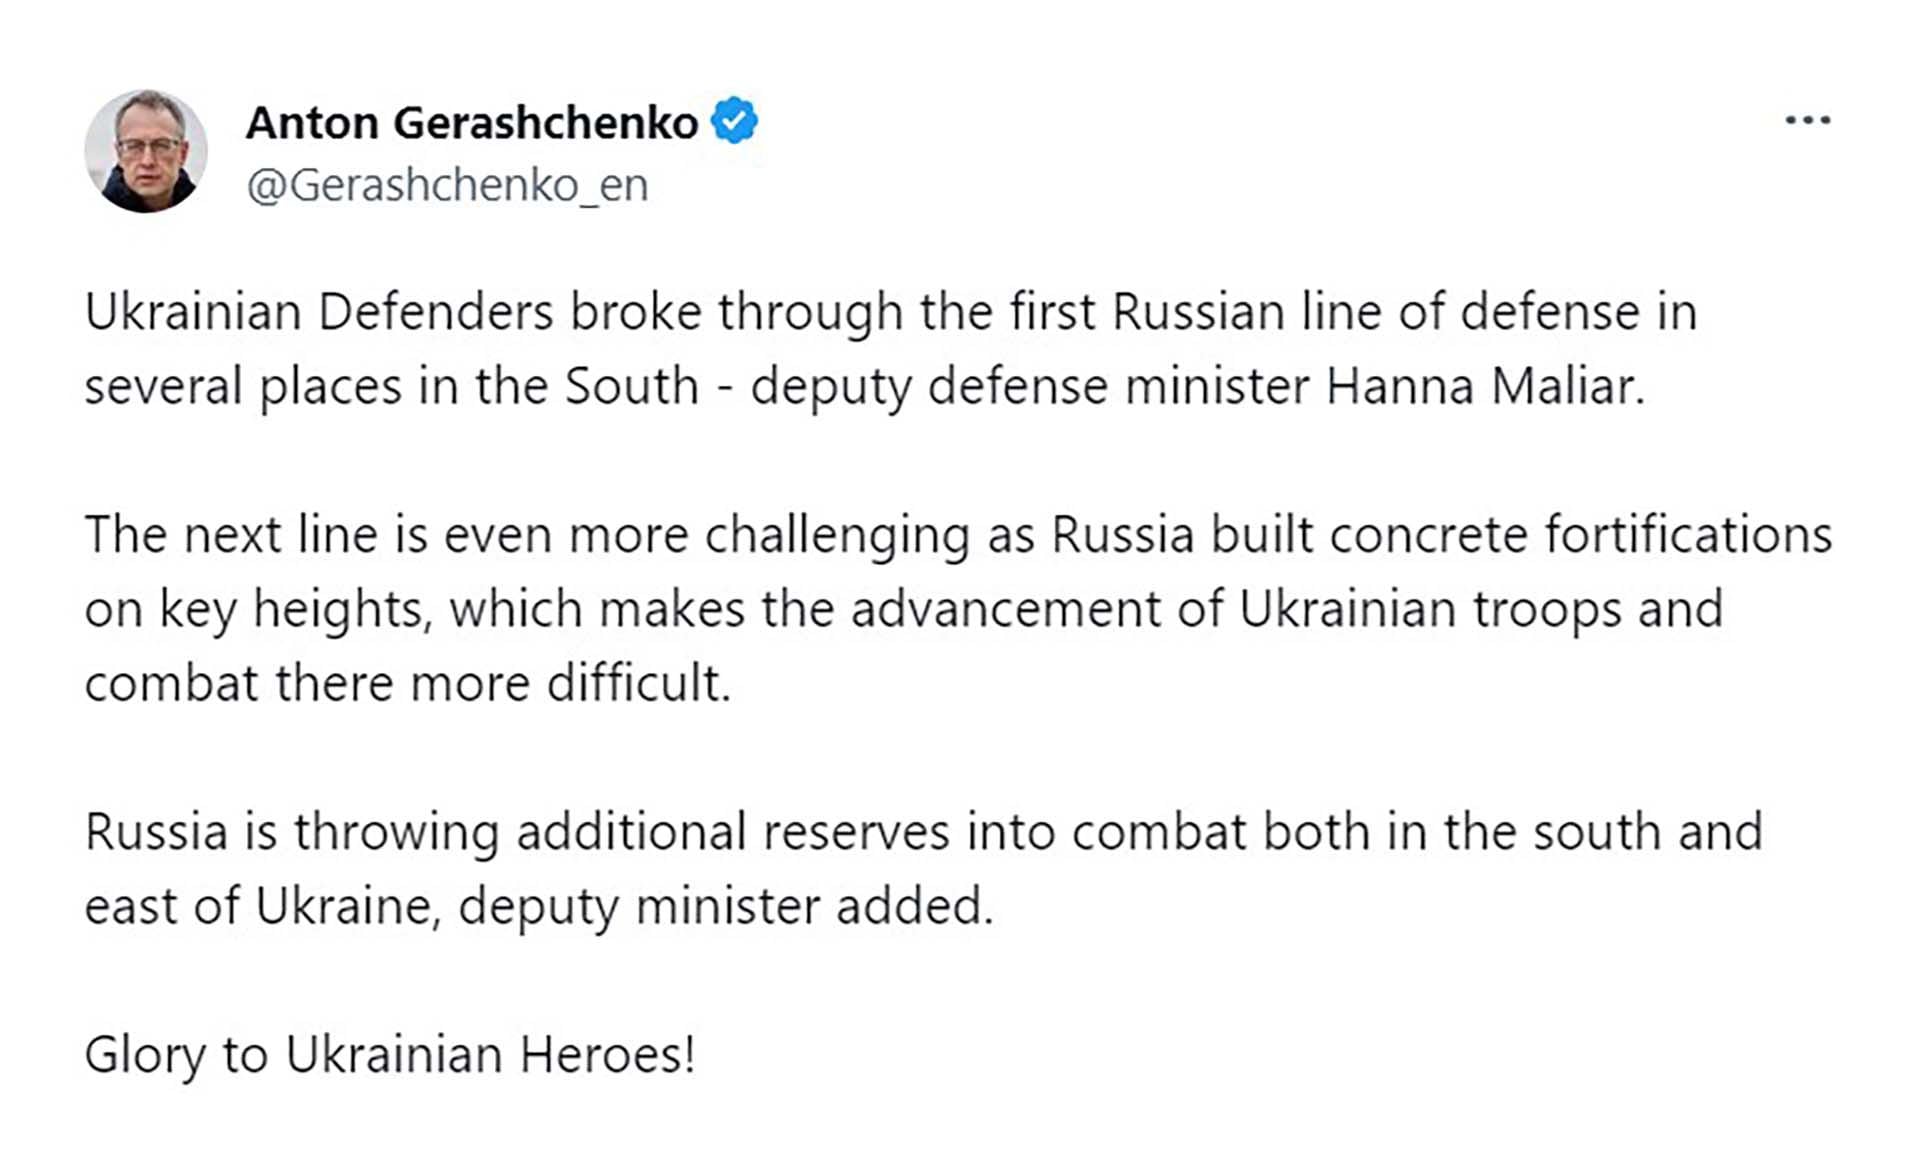 El mensaje de Anton Gerashchenko en Twitter